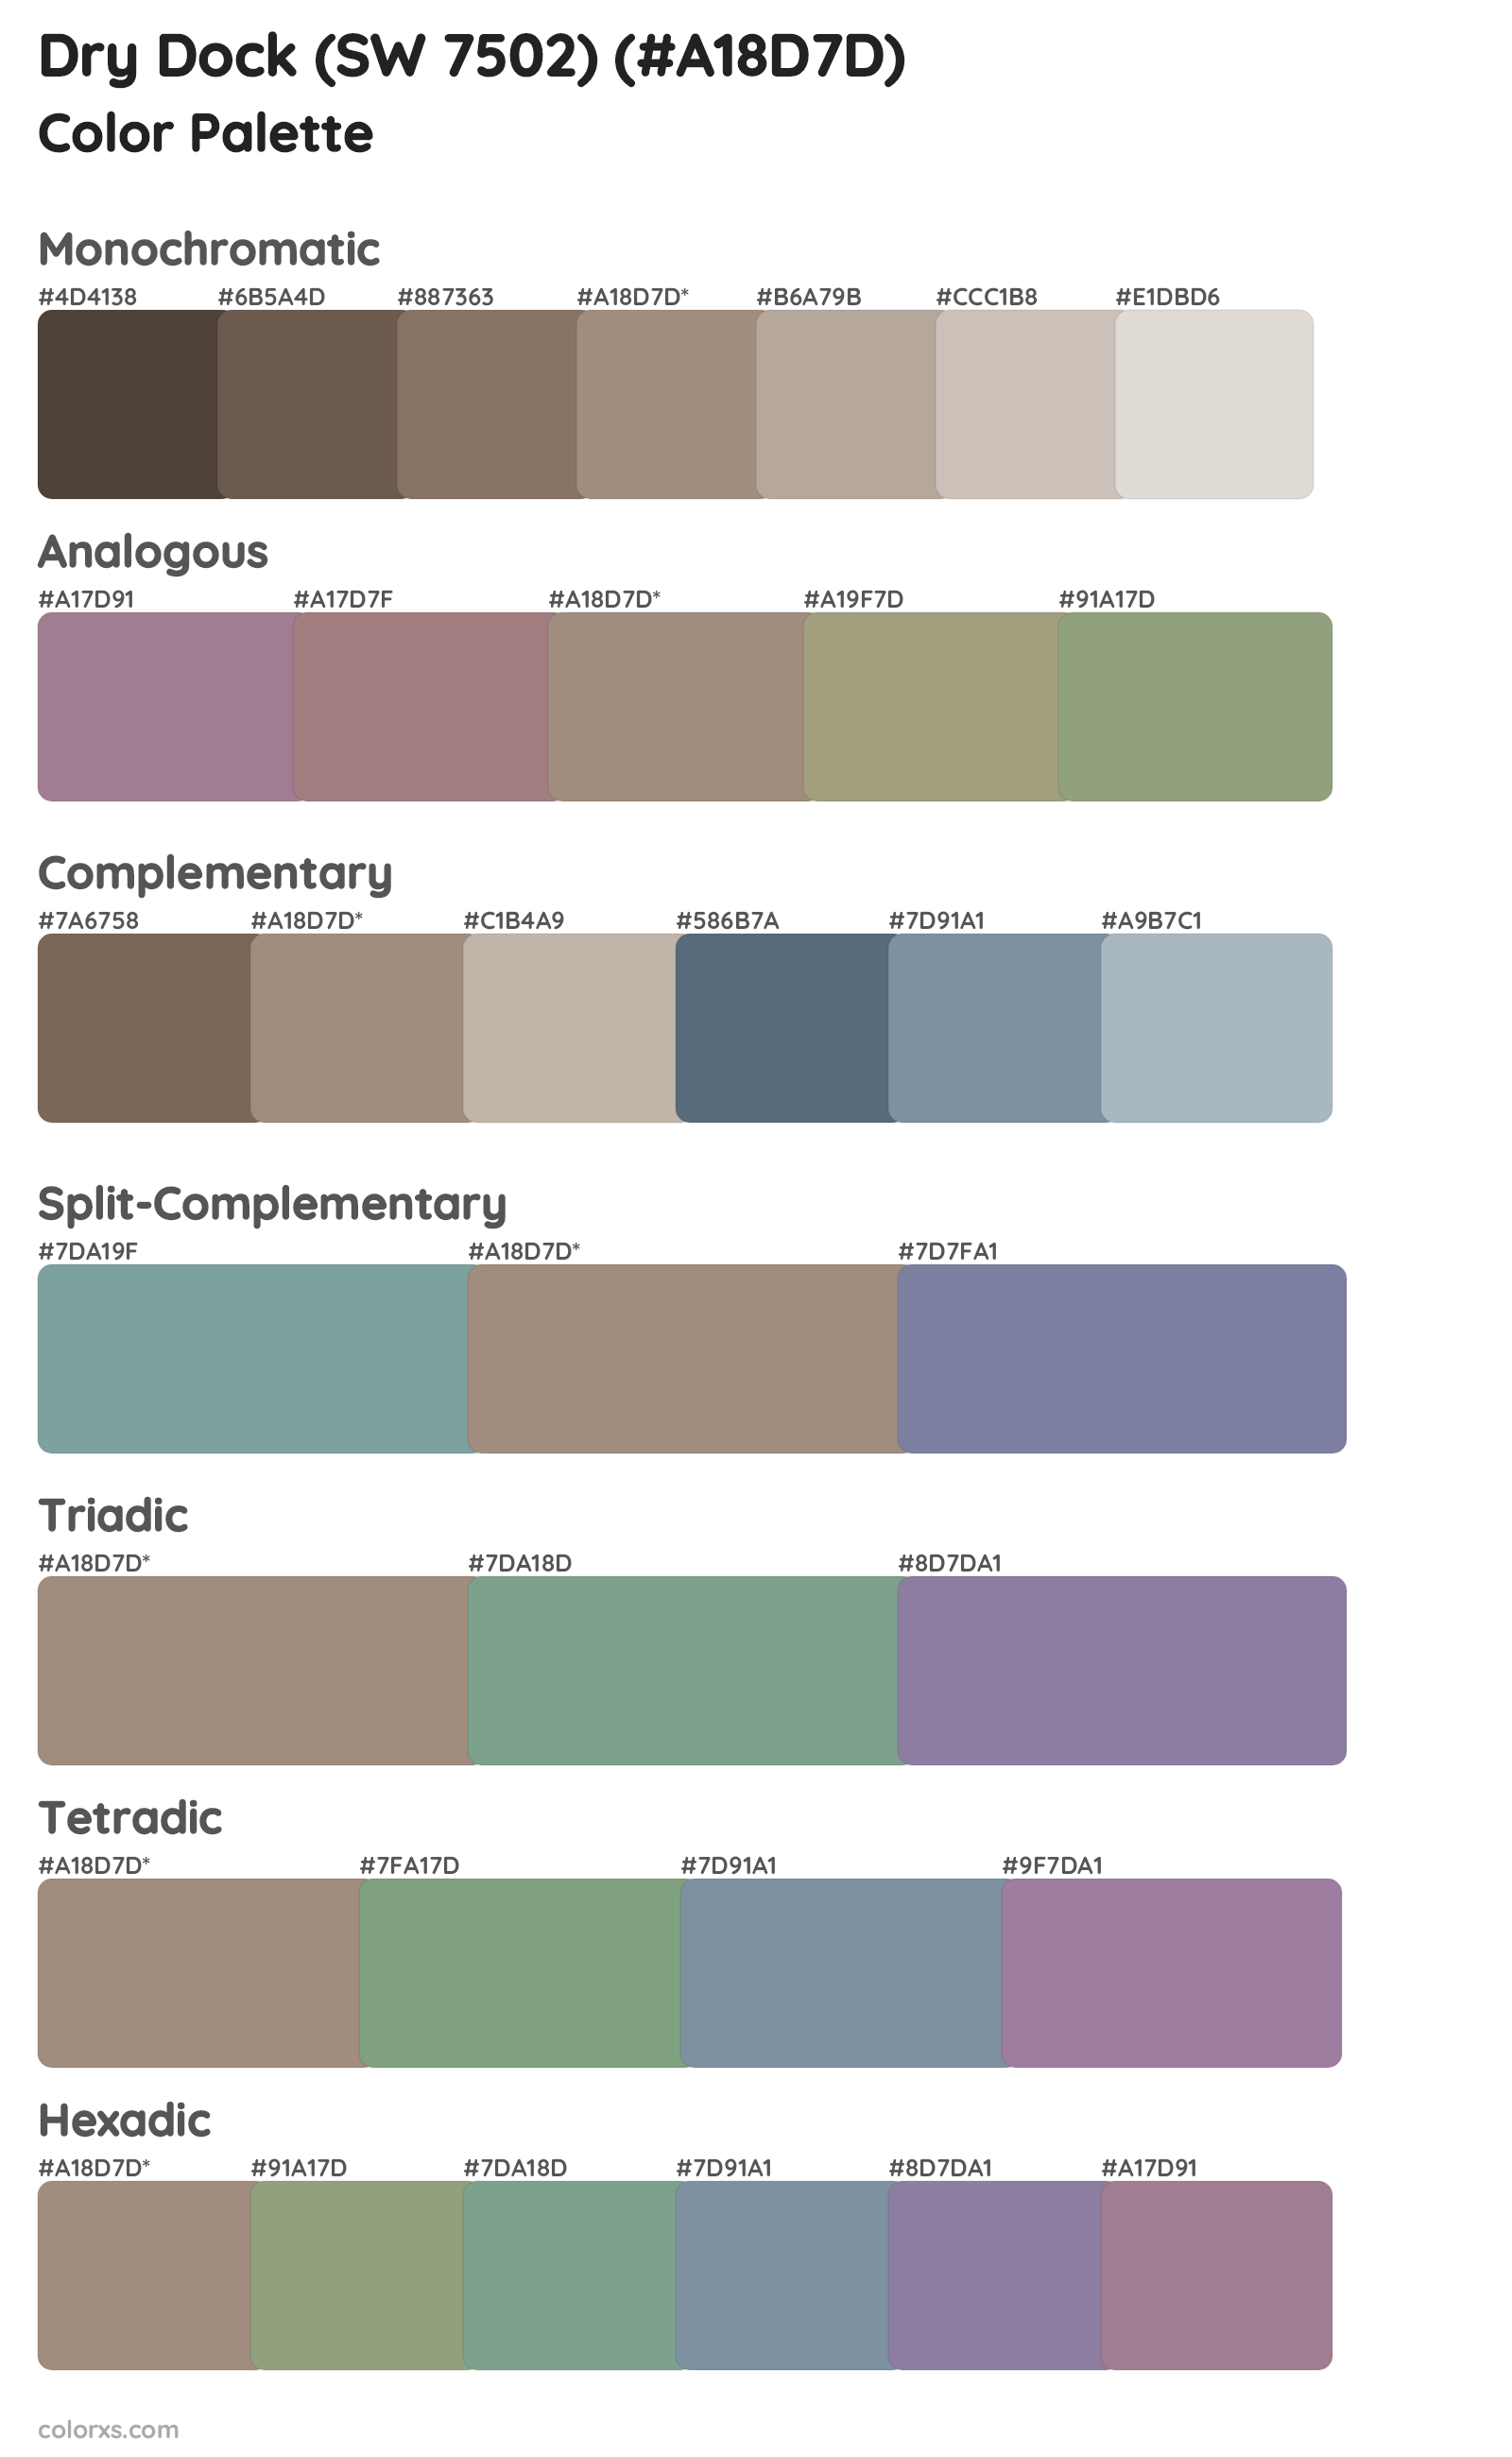 Dry Dock (SW 7502) Color Scheme Palettes